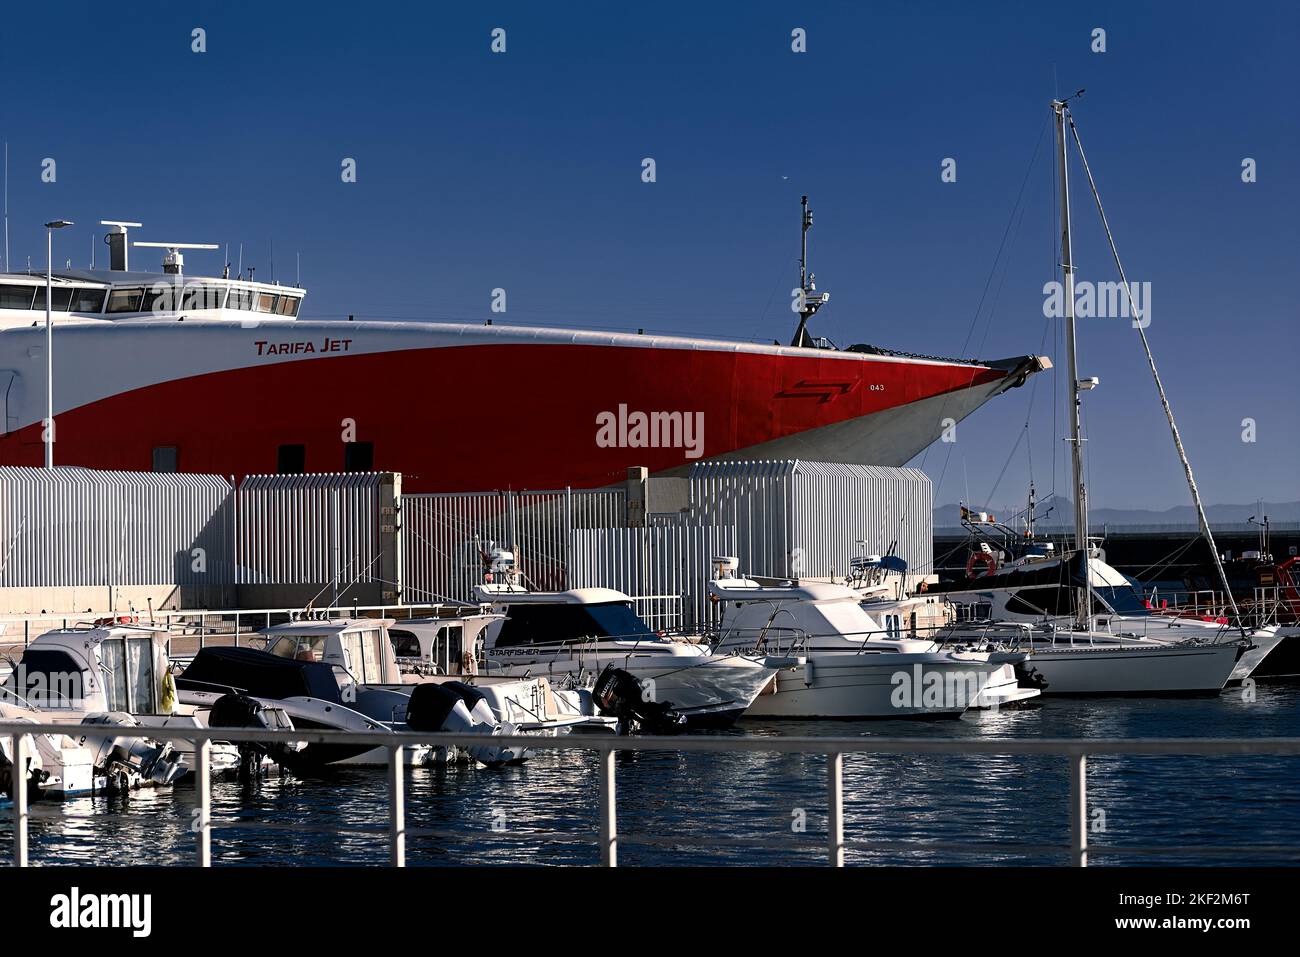 Schnellboot-Hochgeschwindigkeits-Katamaran TARIFA JET im Hafen von tarifa `puerto de tarifa´ Passagier- und Fährschiff. Stockfoto